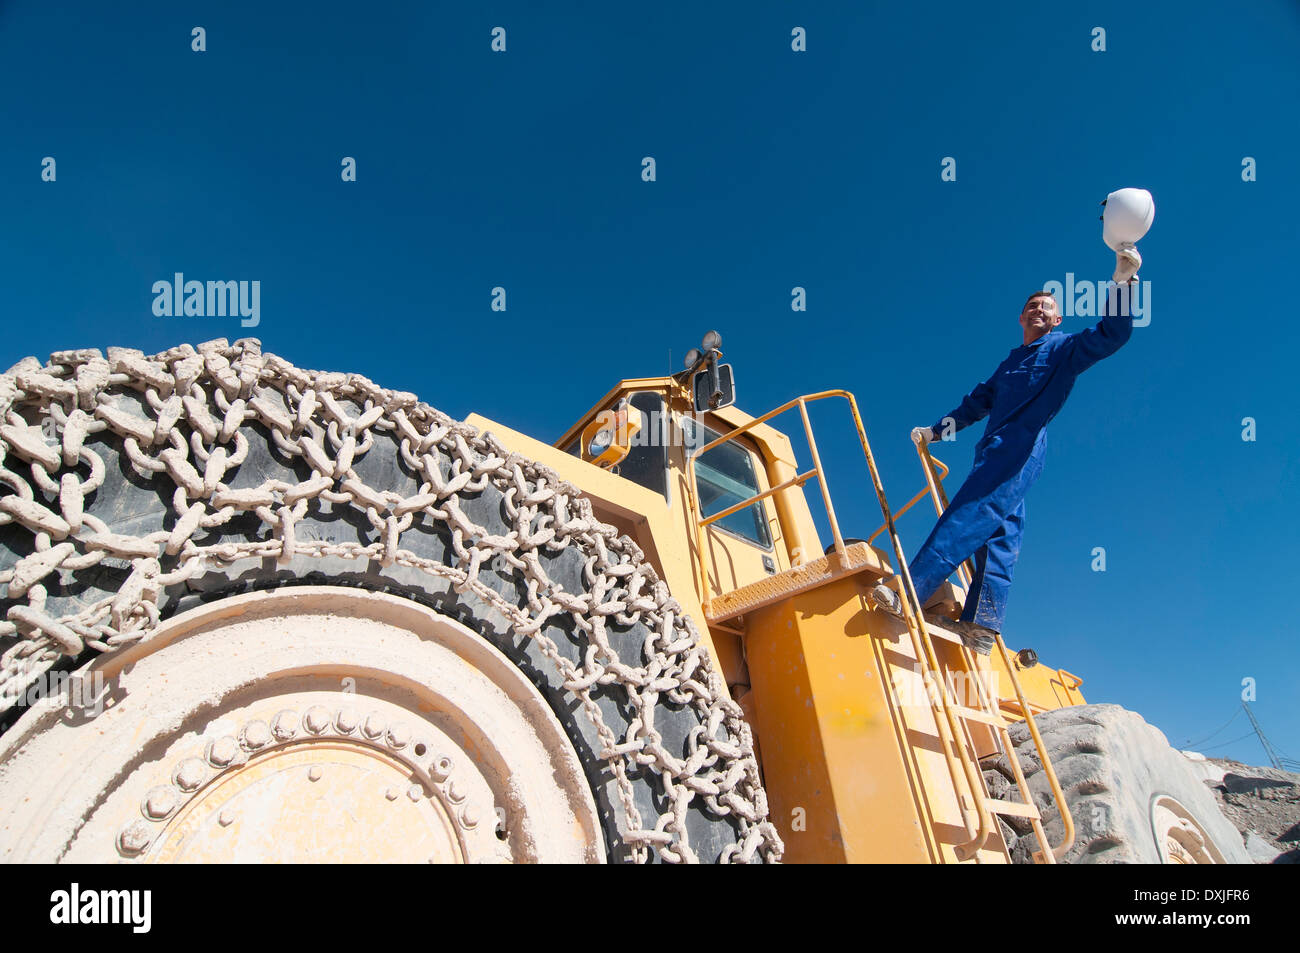 Lavoratore sventolando elmetto in piedi sulla macchina di data mining Foto Stock